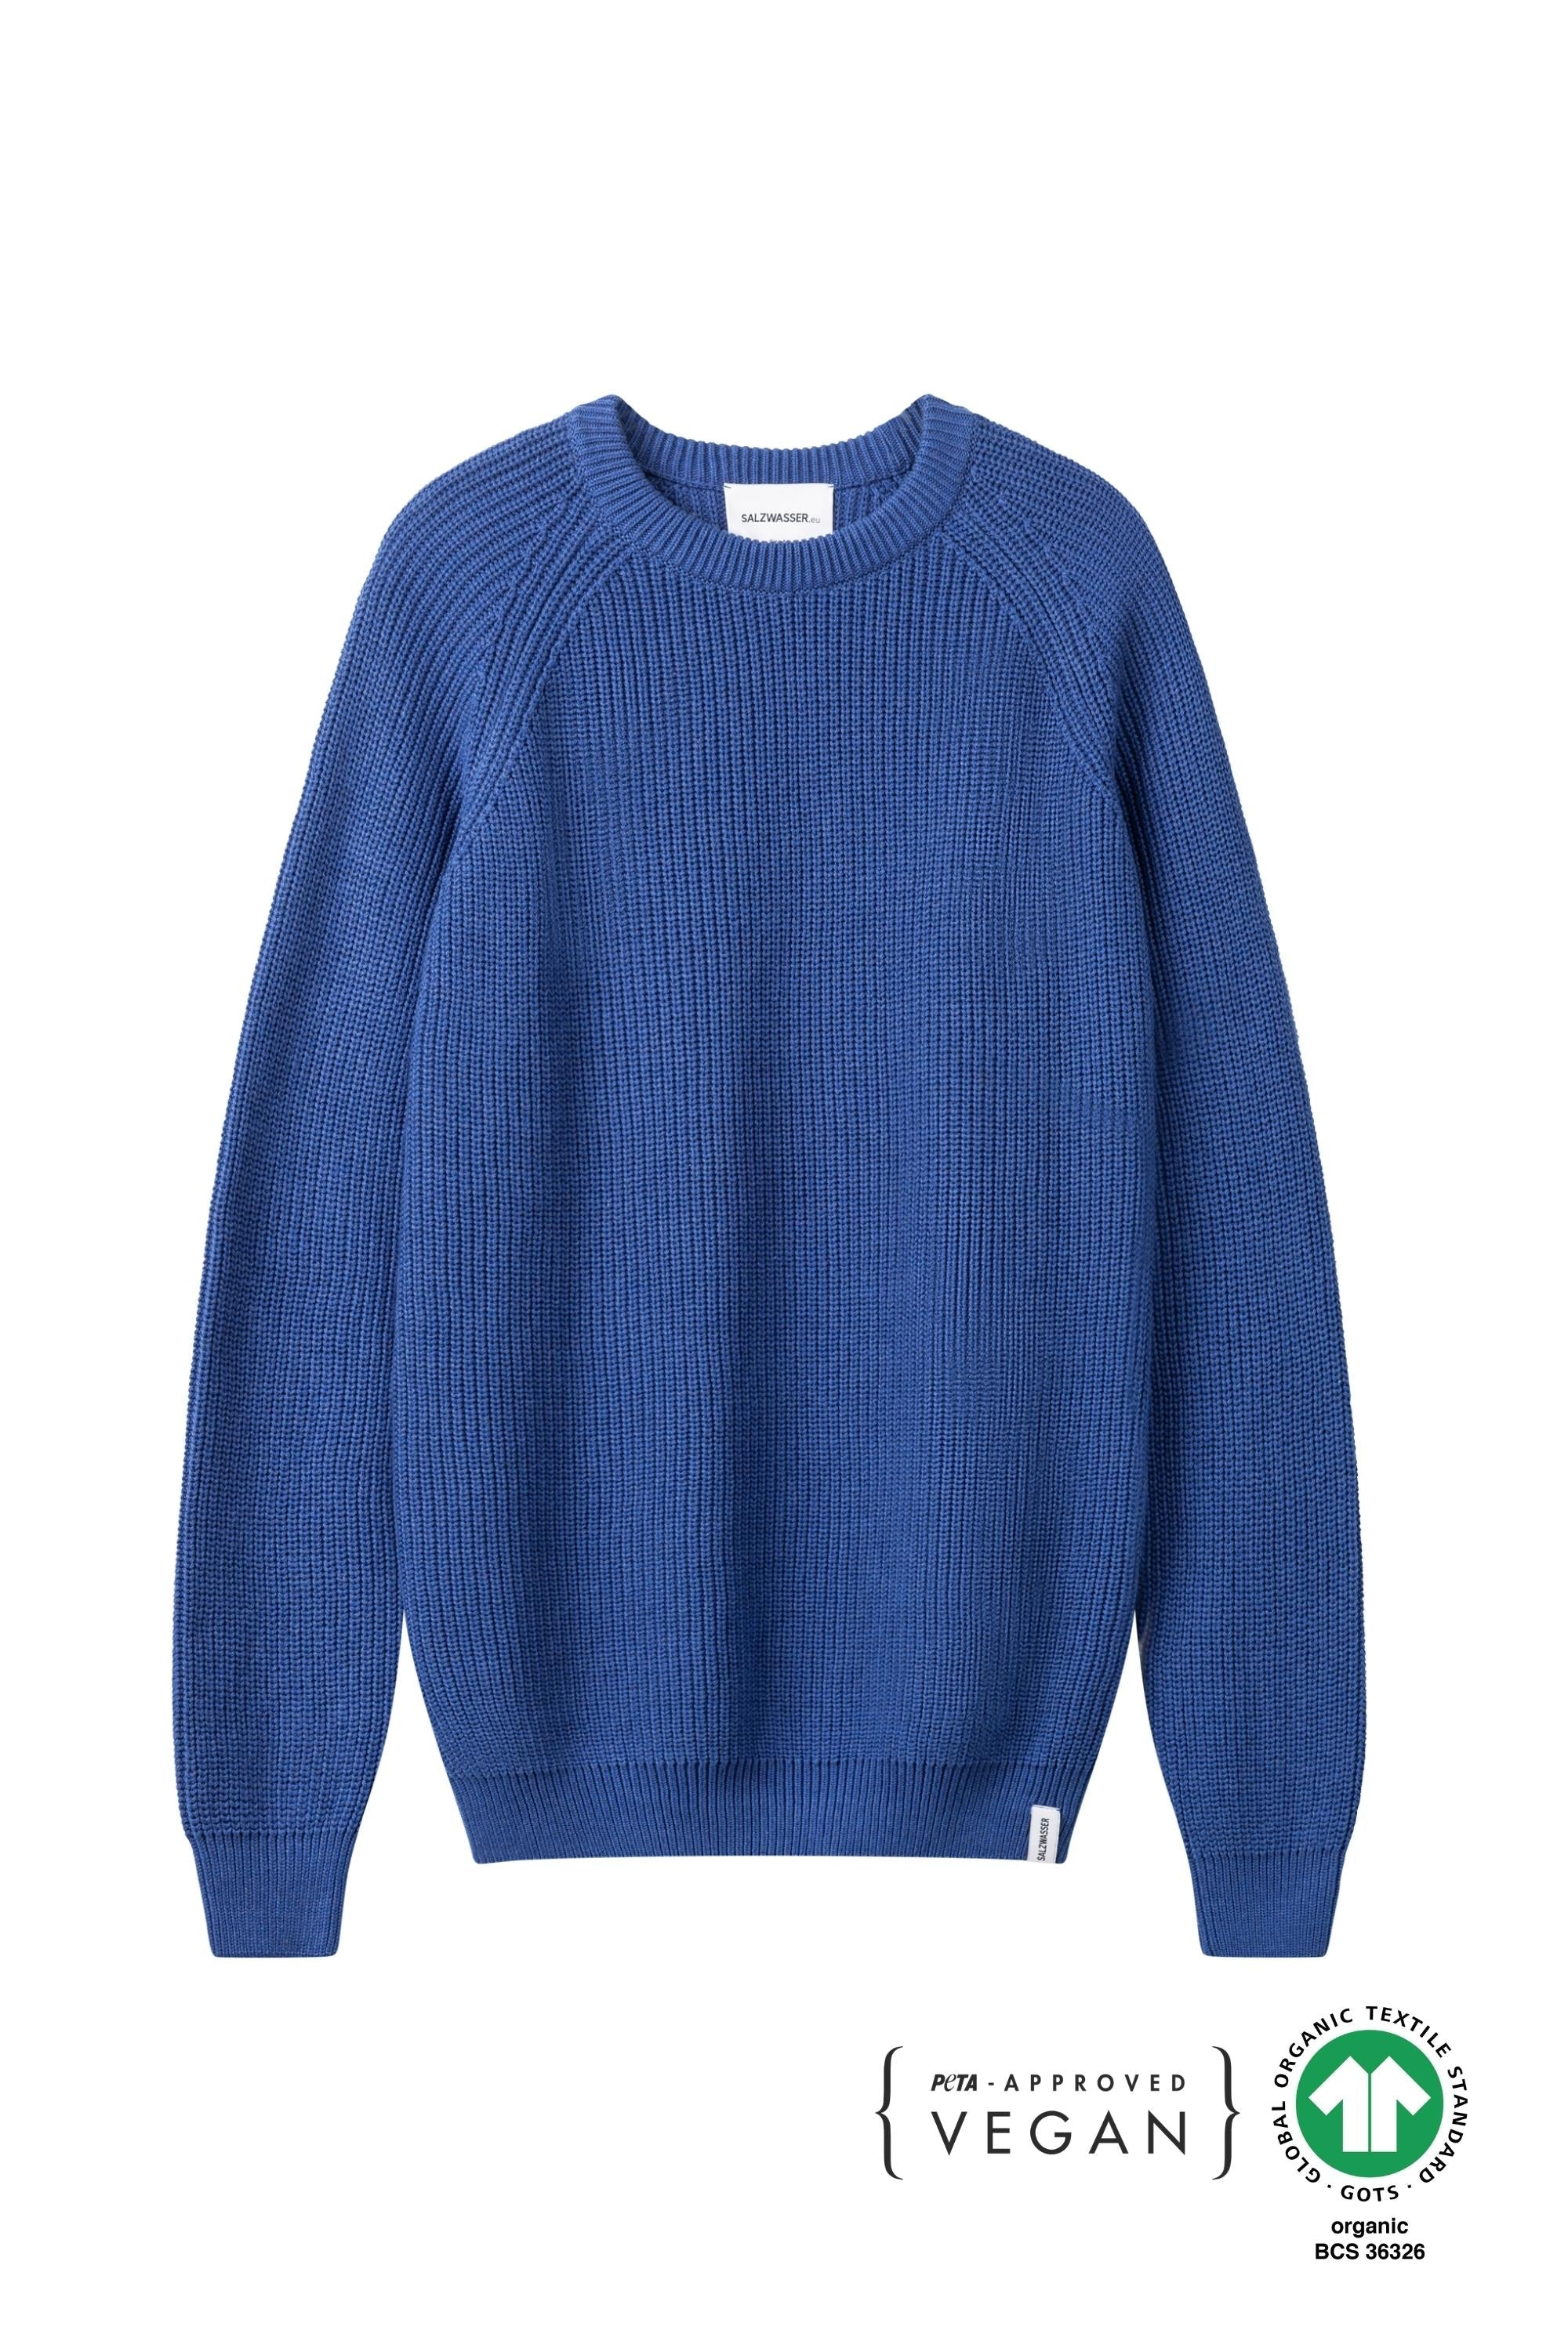 Grobgestrickter Pullover aus Bio-Baumwolle in Blau von SALZWASSER vegan  _men _women